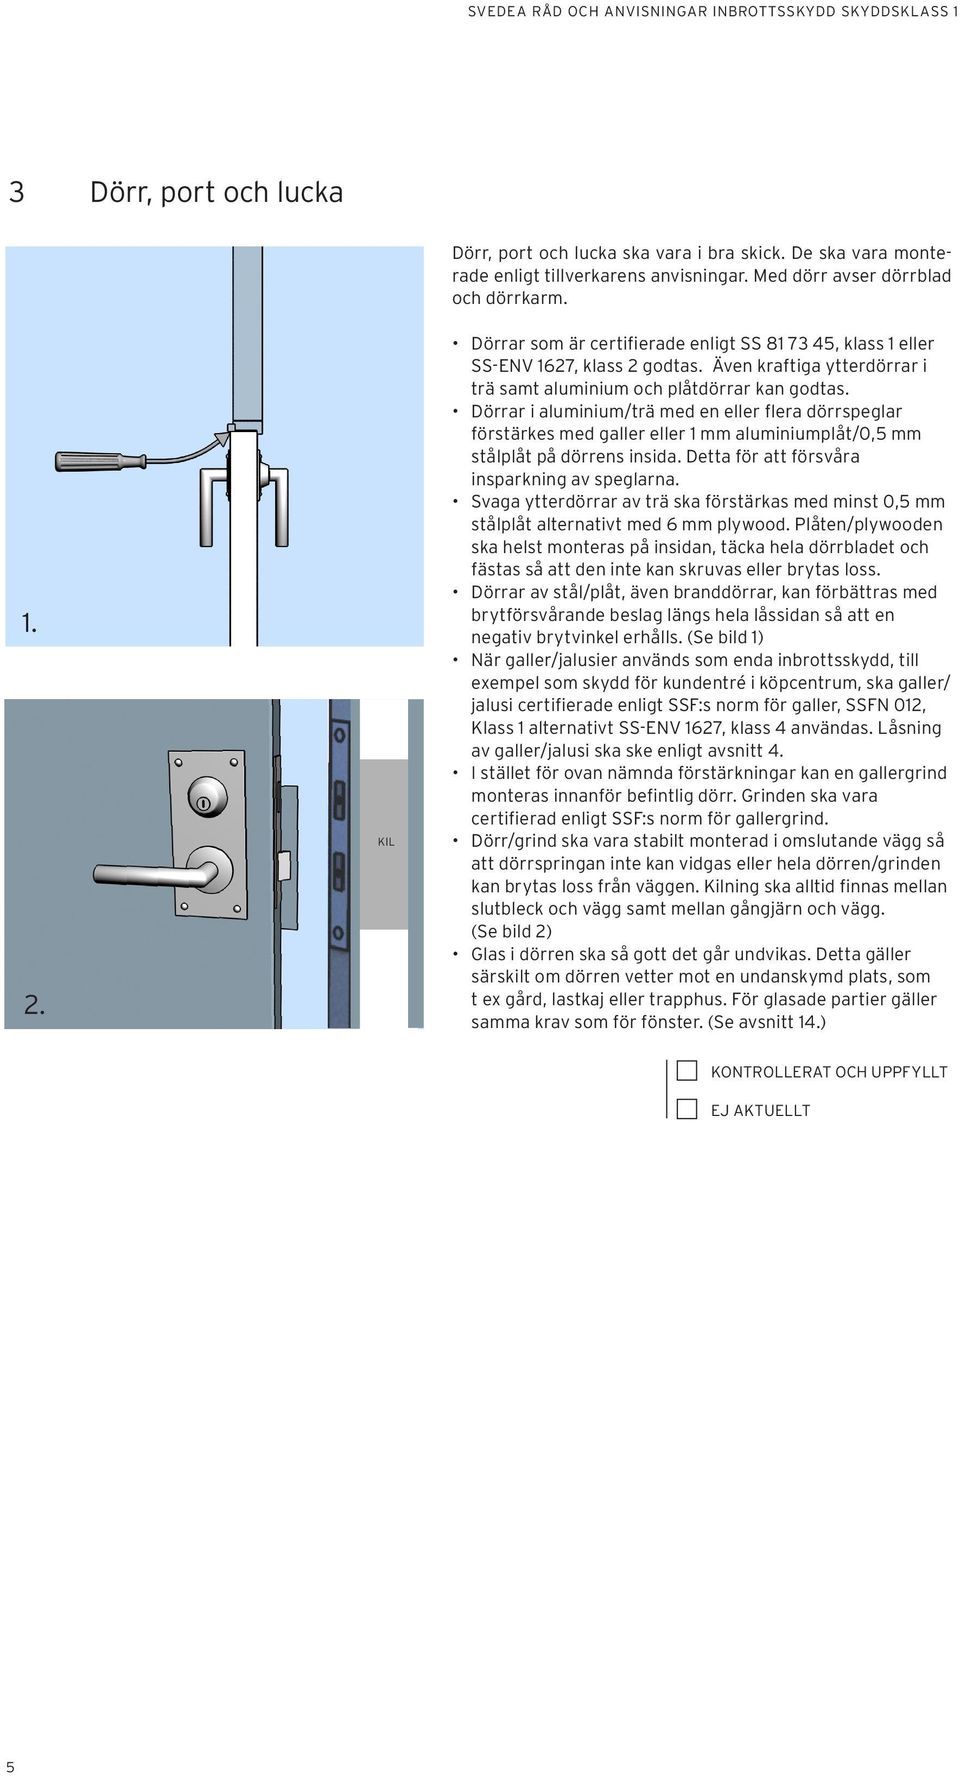 Dörrar i aluminium/trä med en eller flera dörrspeglar förstärkes med galler eller 1 mm aluminiumplåt/0,5 mm stålplåt på dörrens insida. Detta för att försvåra insparkning av speglarna.